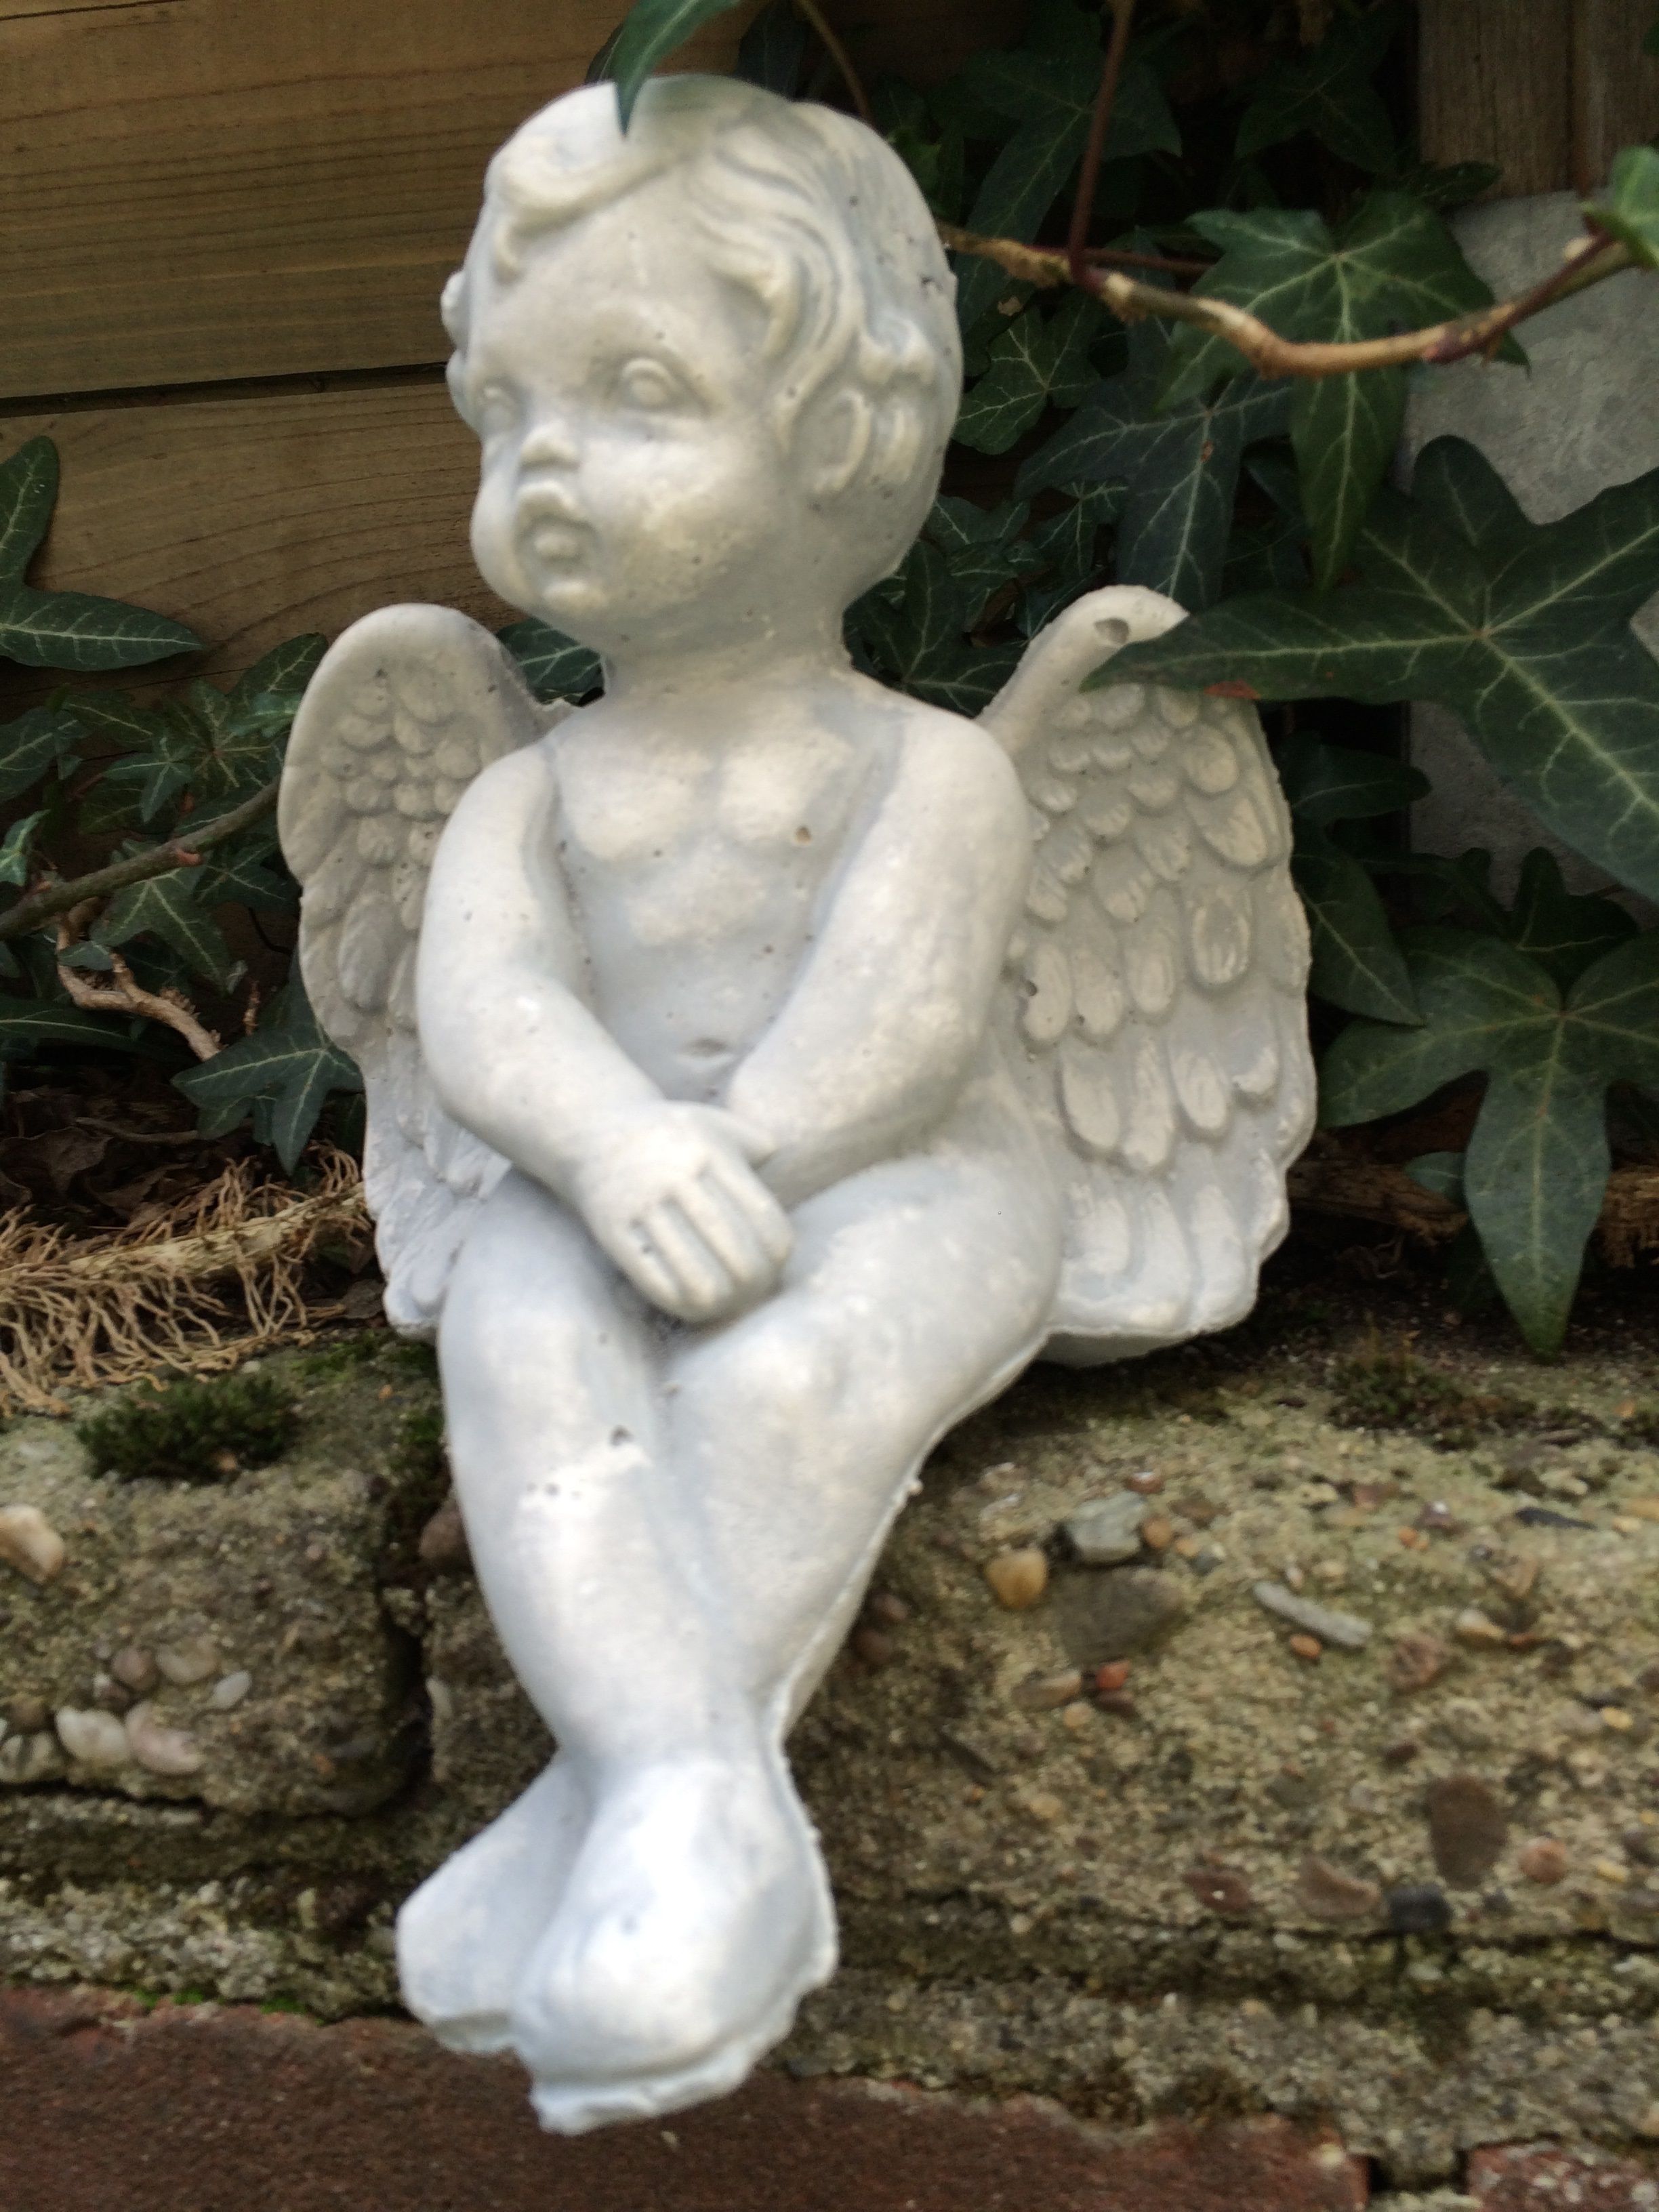 Kleiner sitzender Engel aus massivem Stein, schön anzusehen!